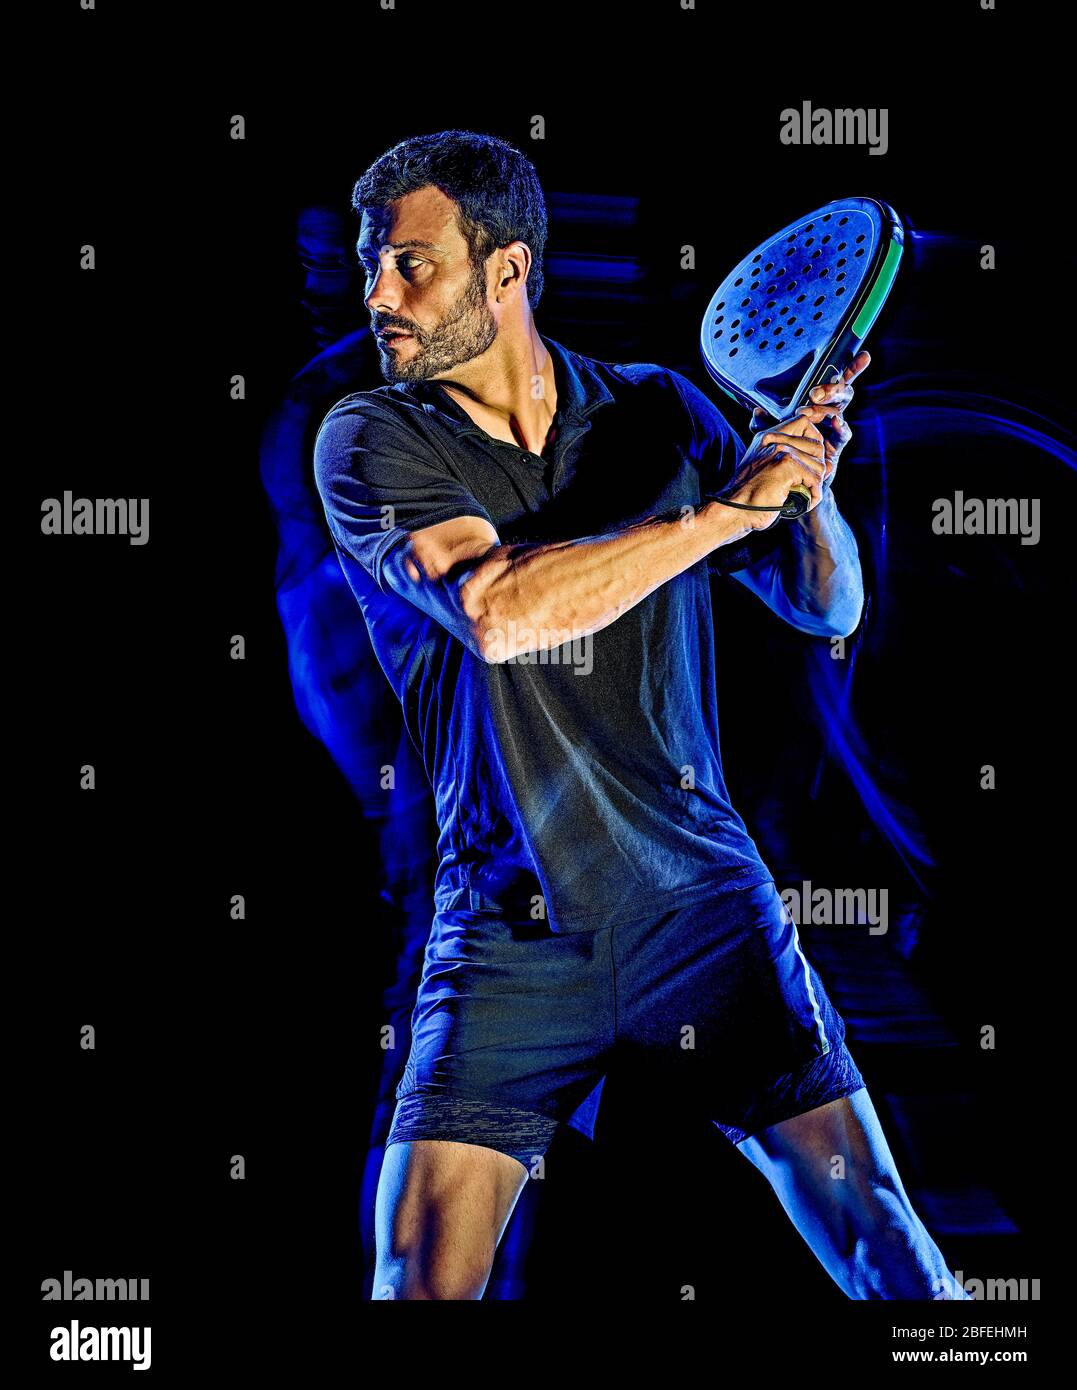 Un portrait du paddle tennis player man studio shot isolé sur fond noir avec le light painting effet flou Banque D'Images